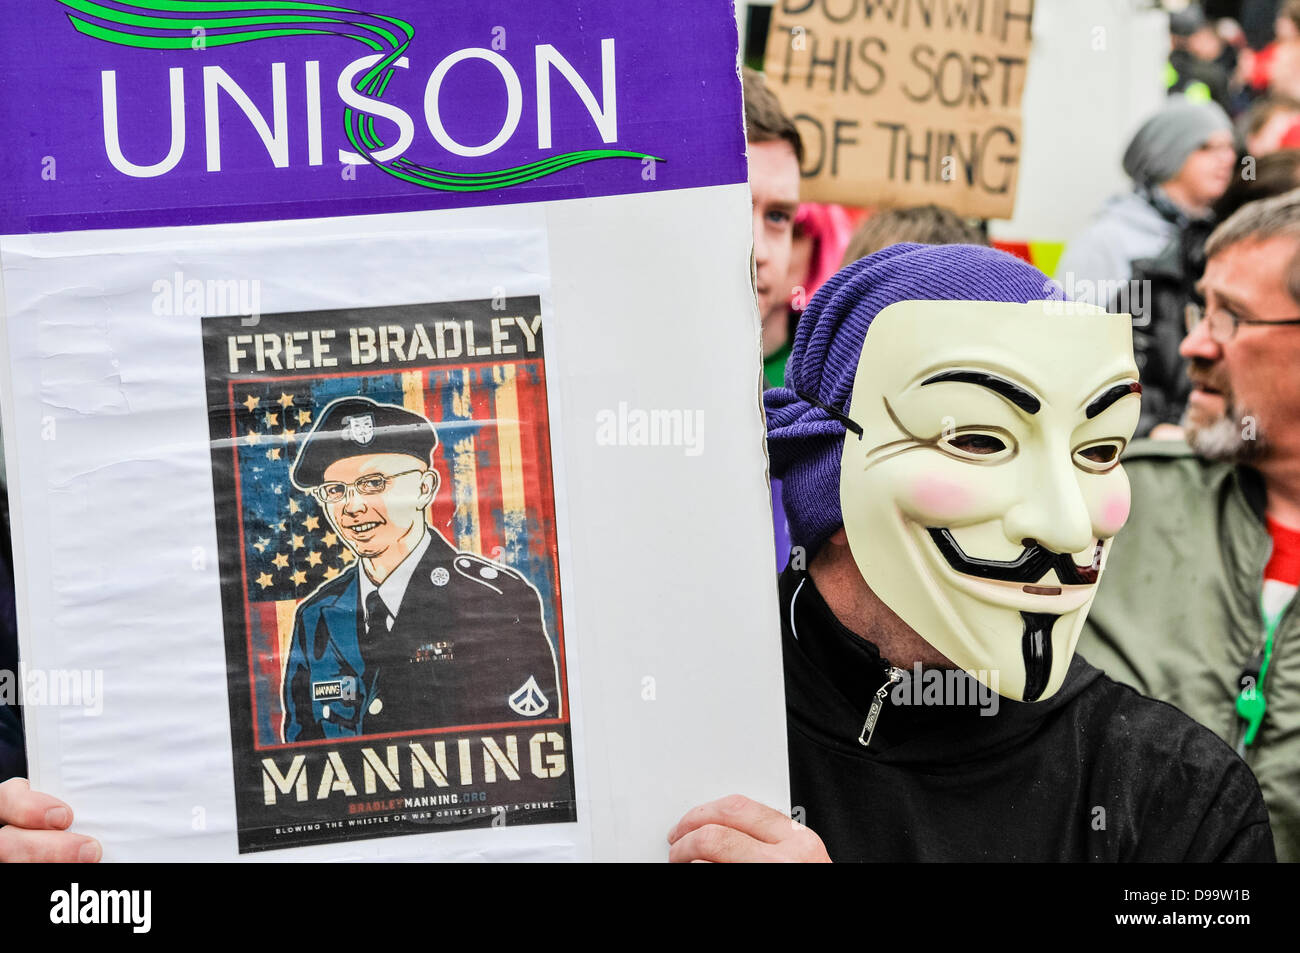 Belfast, Irlande du Nord. 15 juin 2013. Un homme portant un 'V pour Vendetta' masque, couramment utilisées par le groupe 'hacker' Anonyme, soutient une banderole appelant à la libération de Bradley Manning Crédit : Stephen Barnes/Alamy Live News Banque D'Images